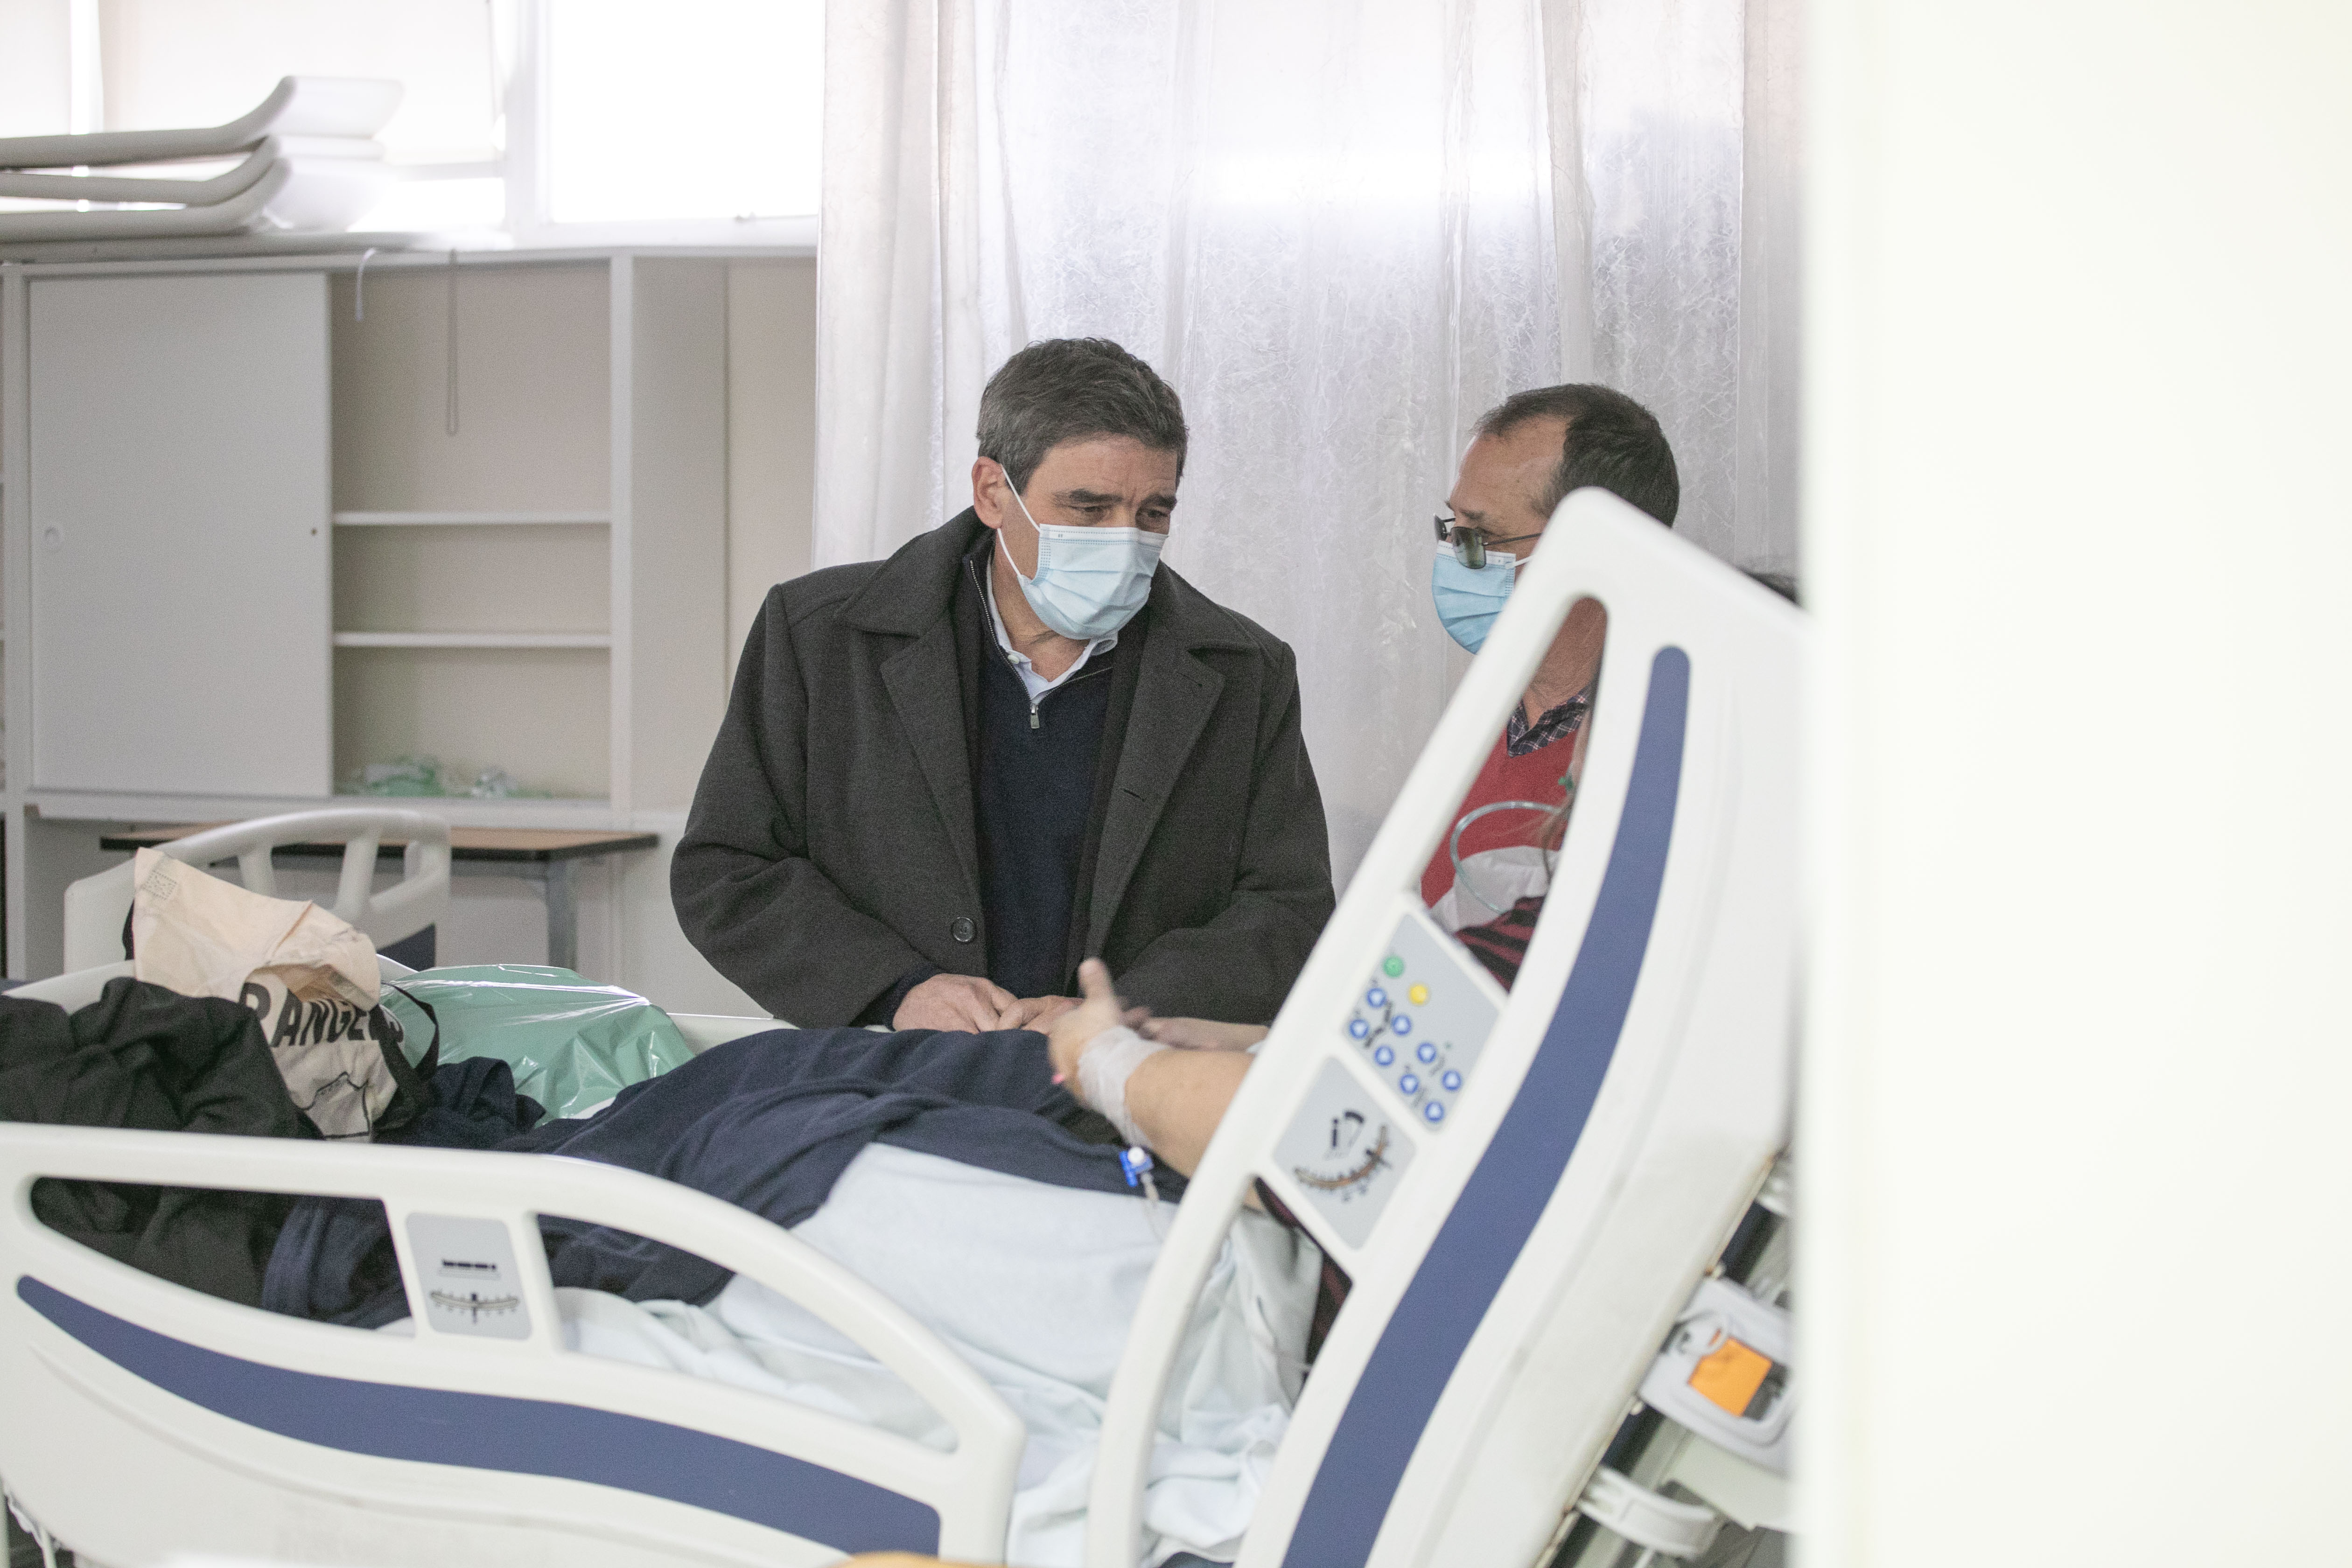 Quirós visitó a los heridos: “Lo más importante es ponerse a disposición de las familias y de todos los pacientes”